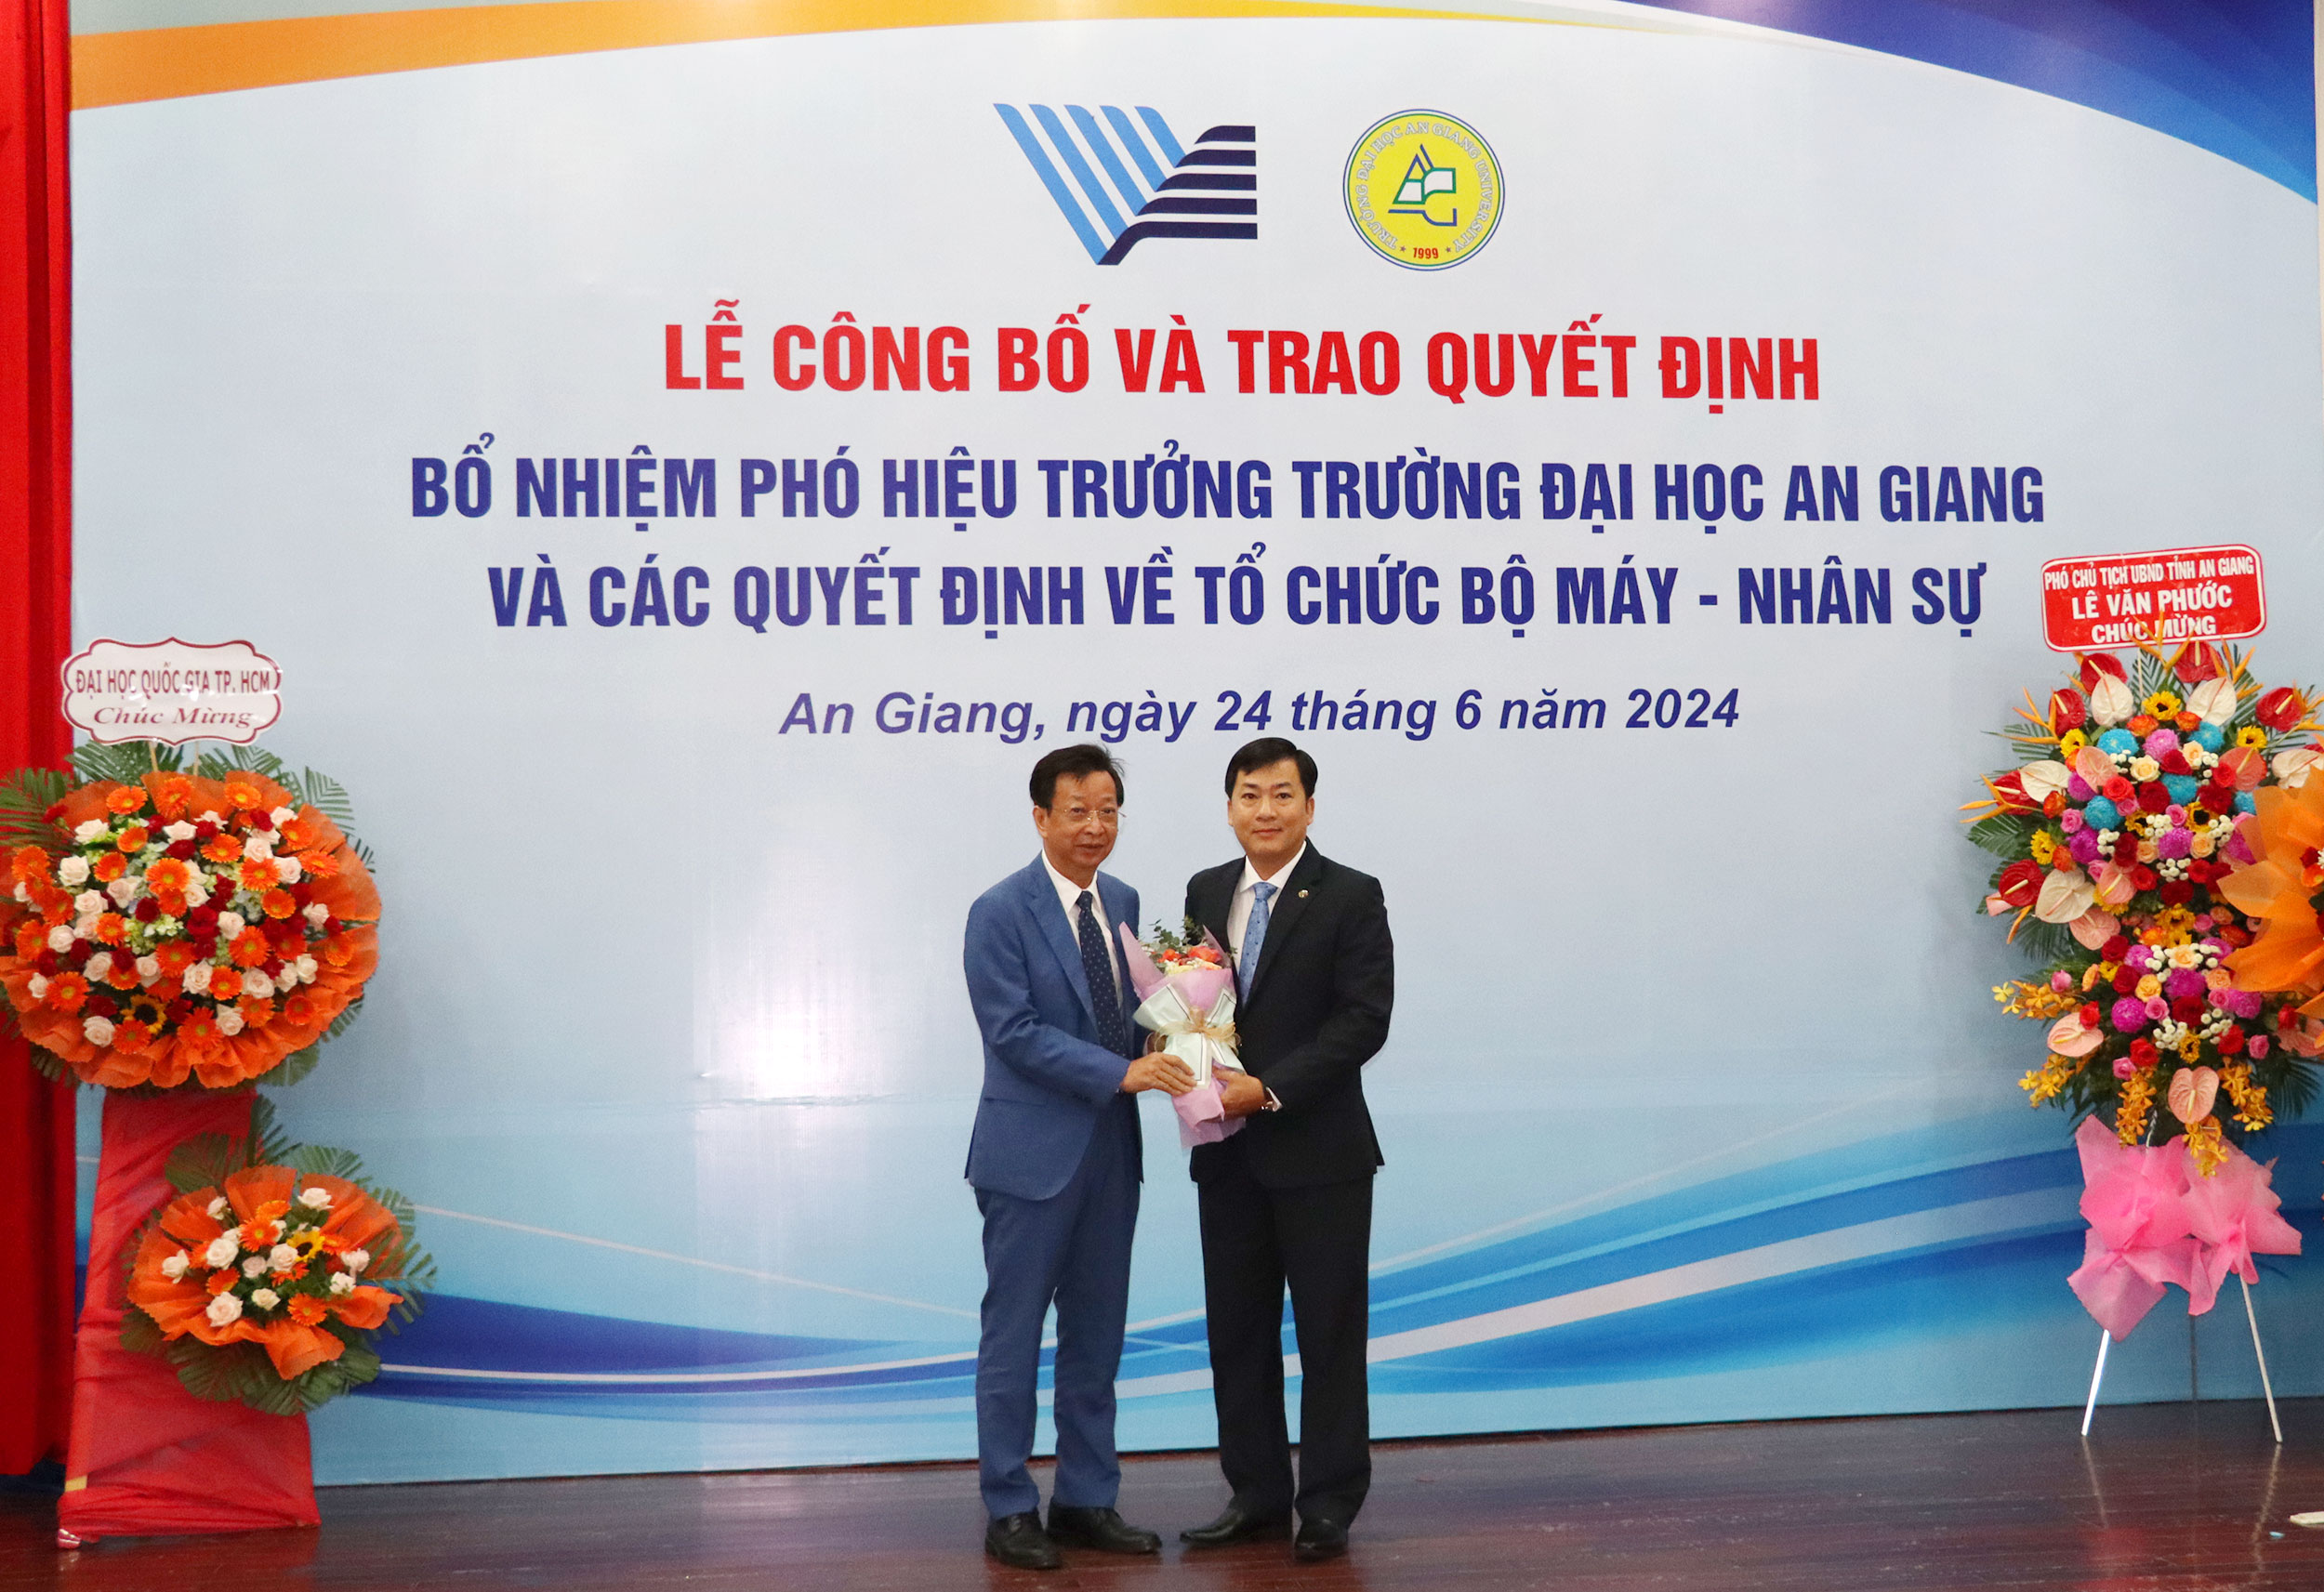 PGS.TS Võ Văn Thắng, Hiệu trưởng Trường Đại học An Giang tặng hoa chúc mừng tân Phó Hiệu trưởng